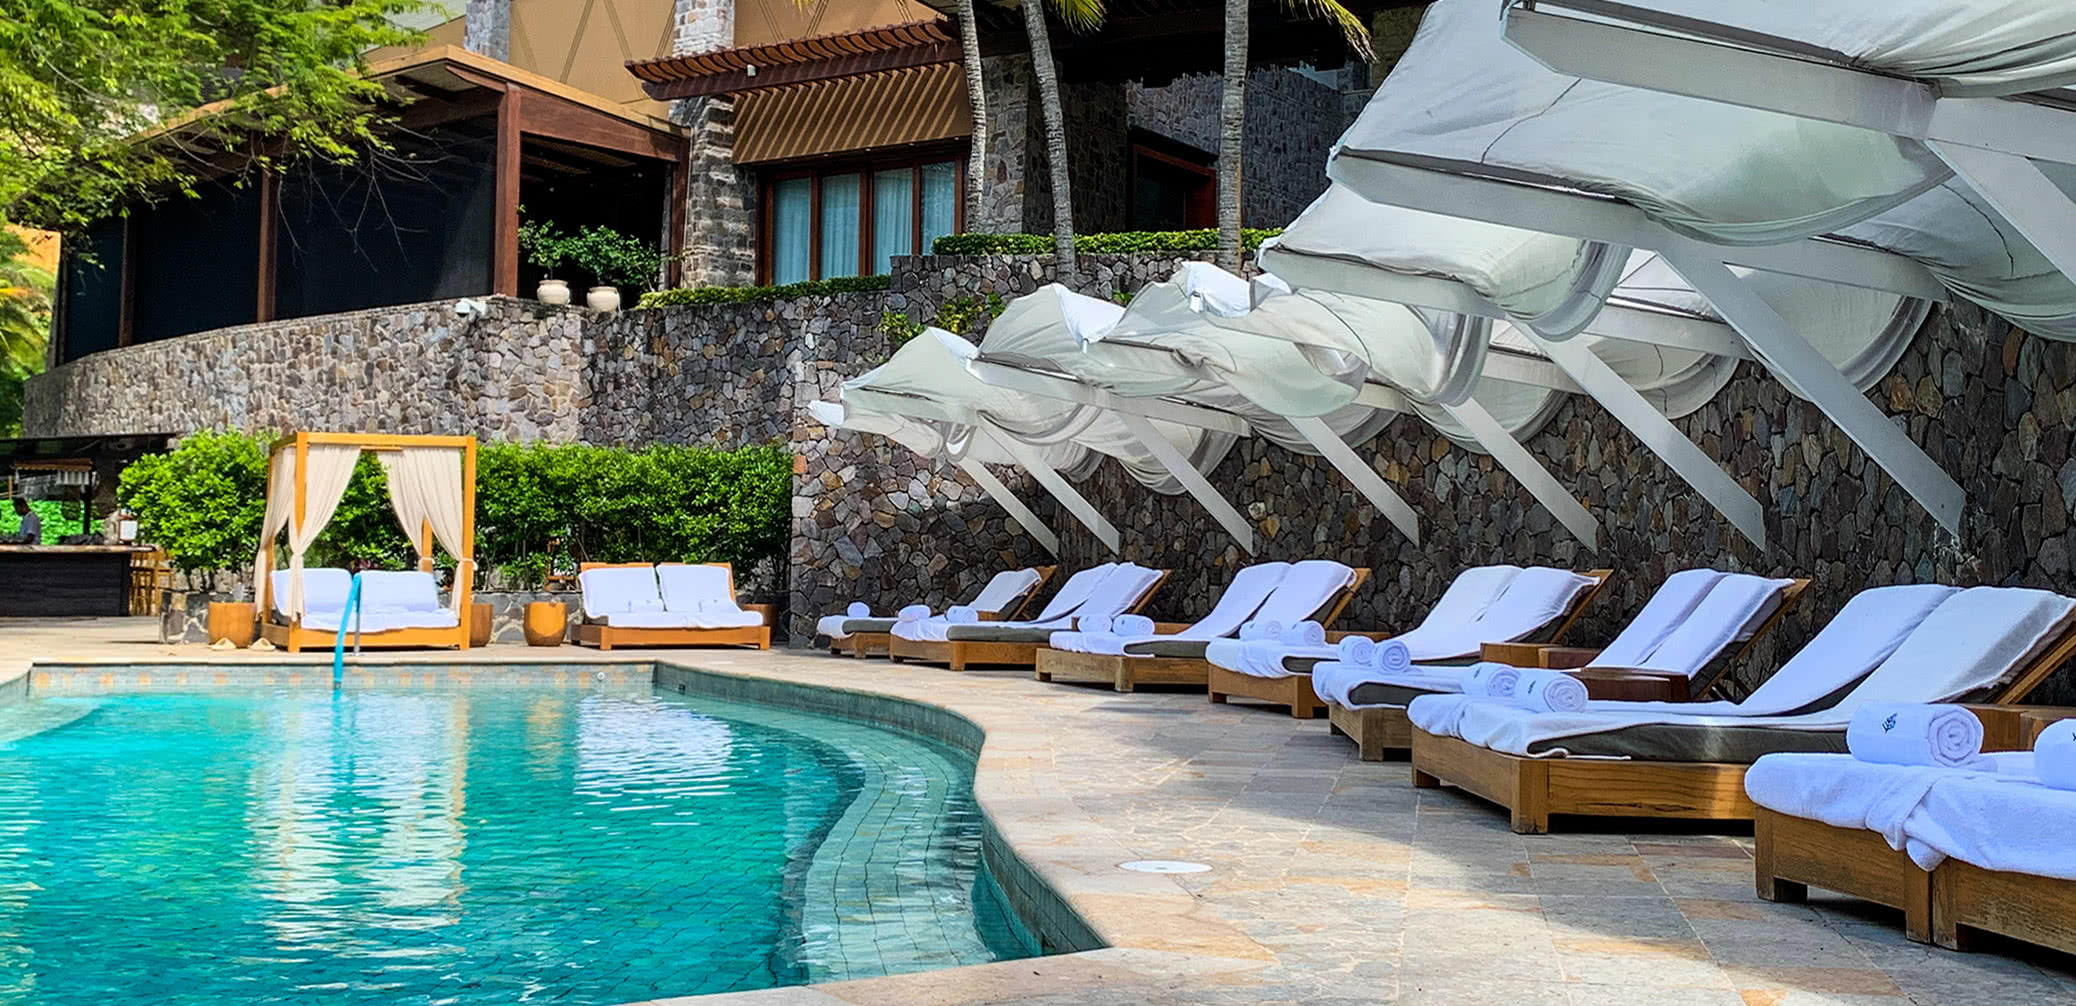 Review: Four Seasons Resort Costa Rica at Peninsula Papagayo